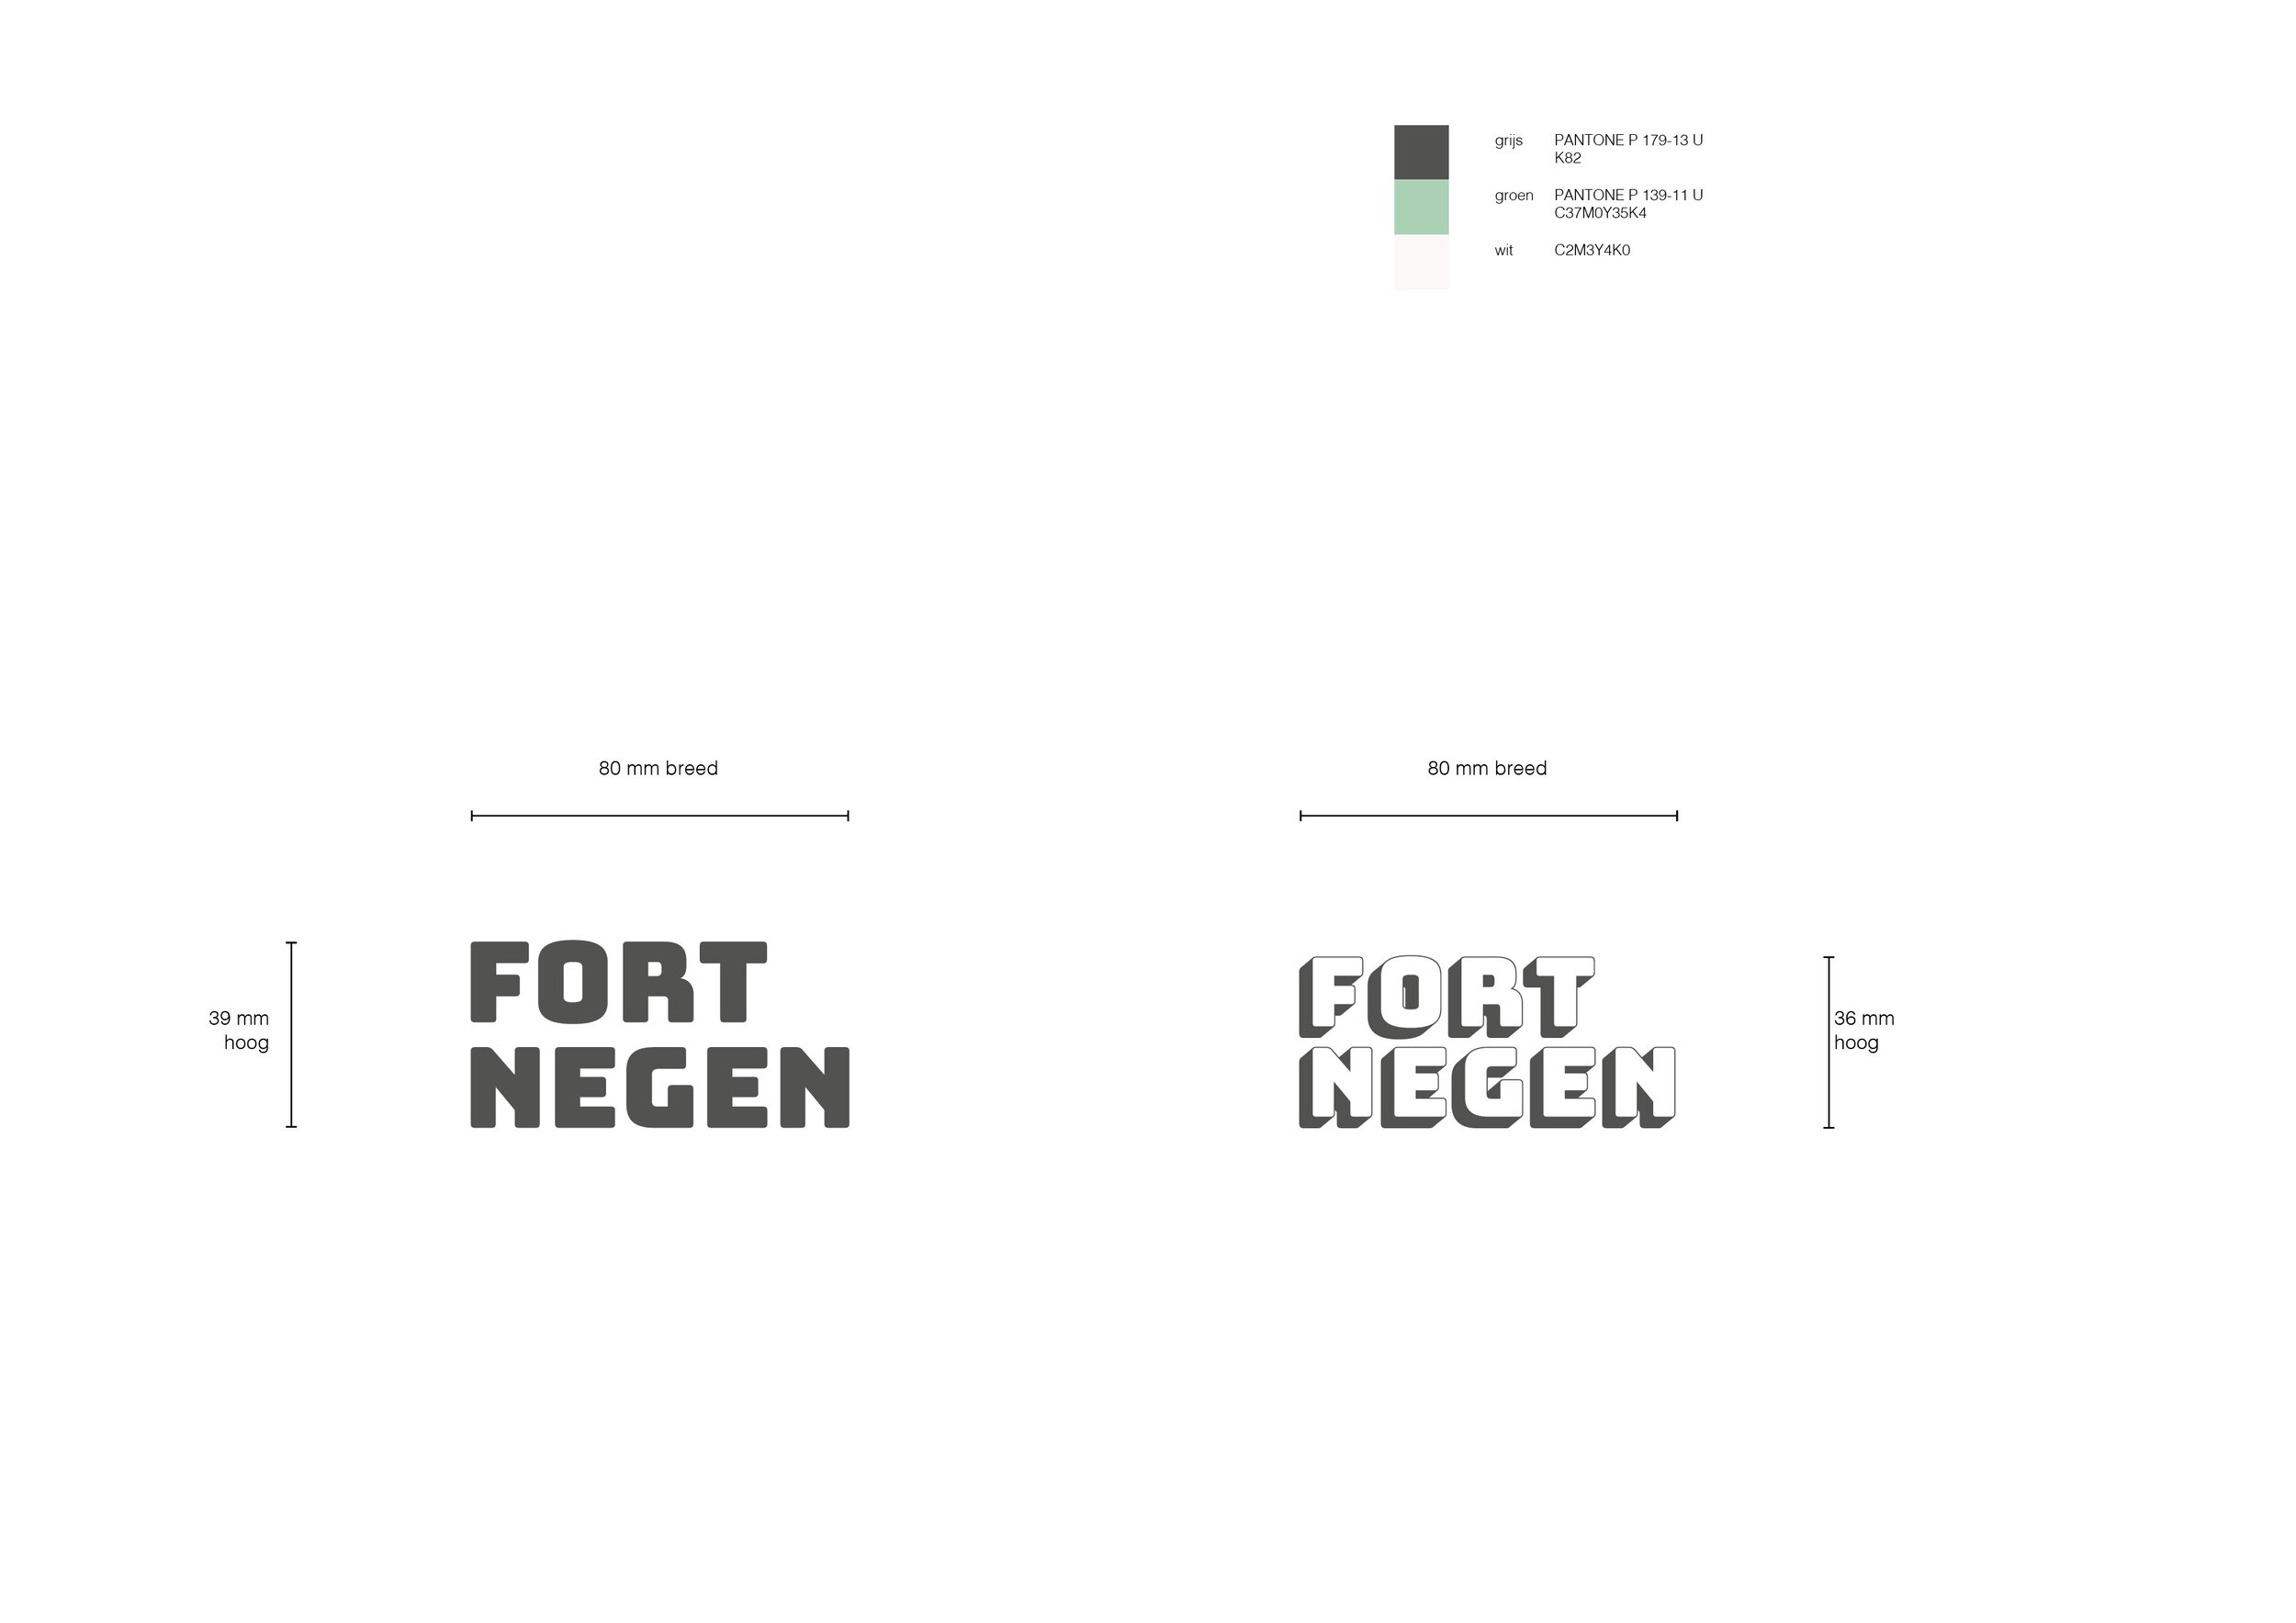 Fort Negen_Brand Identity_IVA2D3D_jpg9.jpg